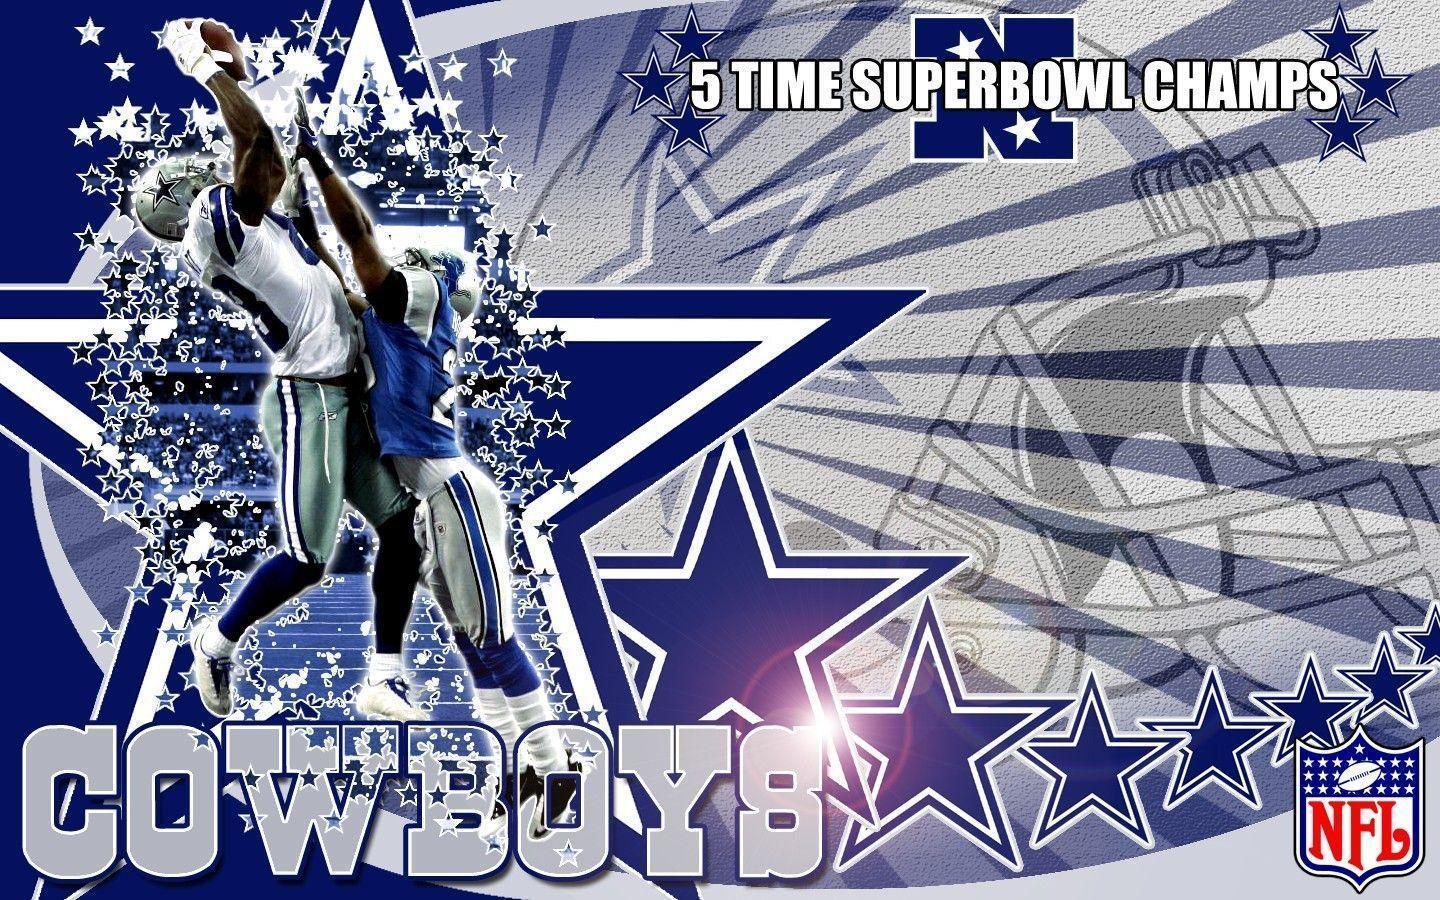 Dallas Cowboys wallpaper HD image. Dallas Cowboys wallpaper